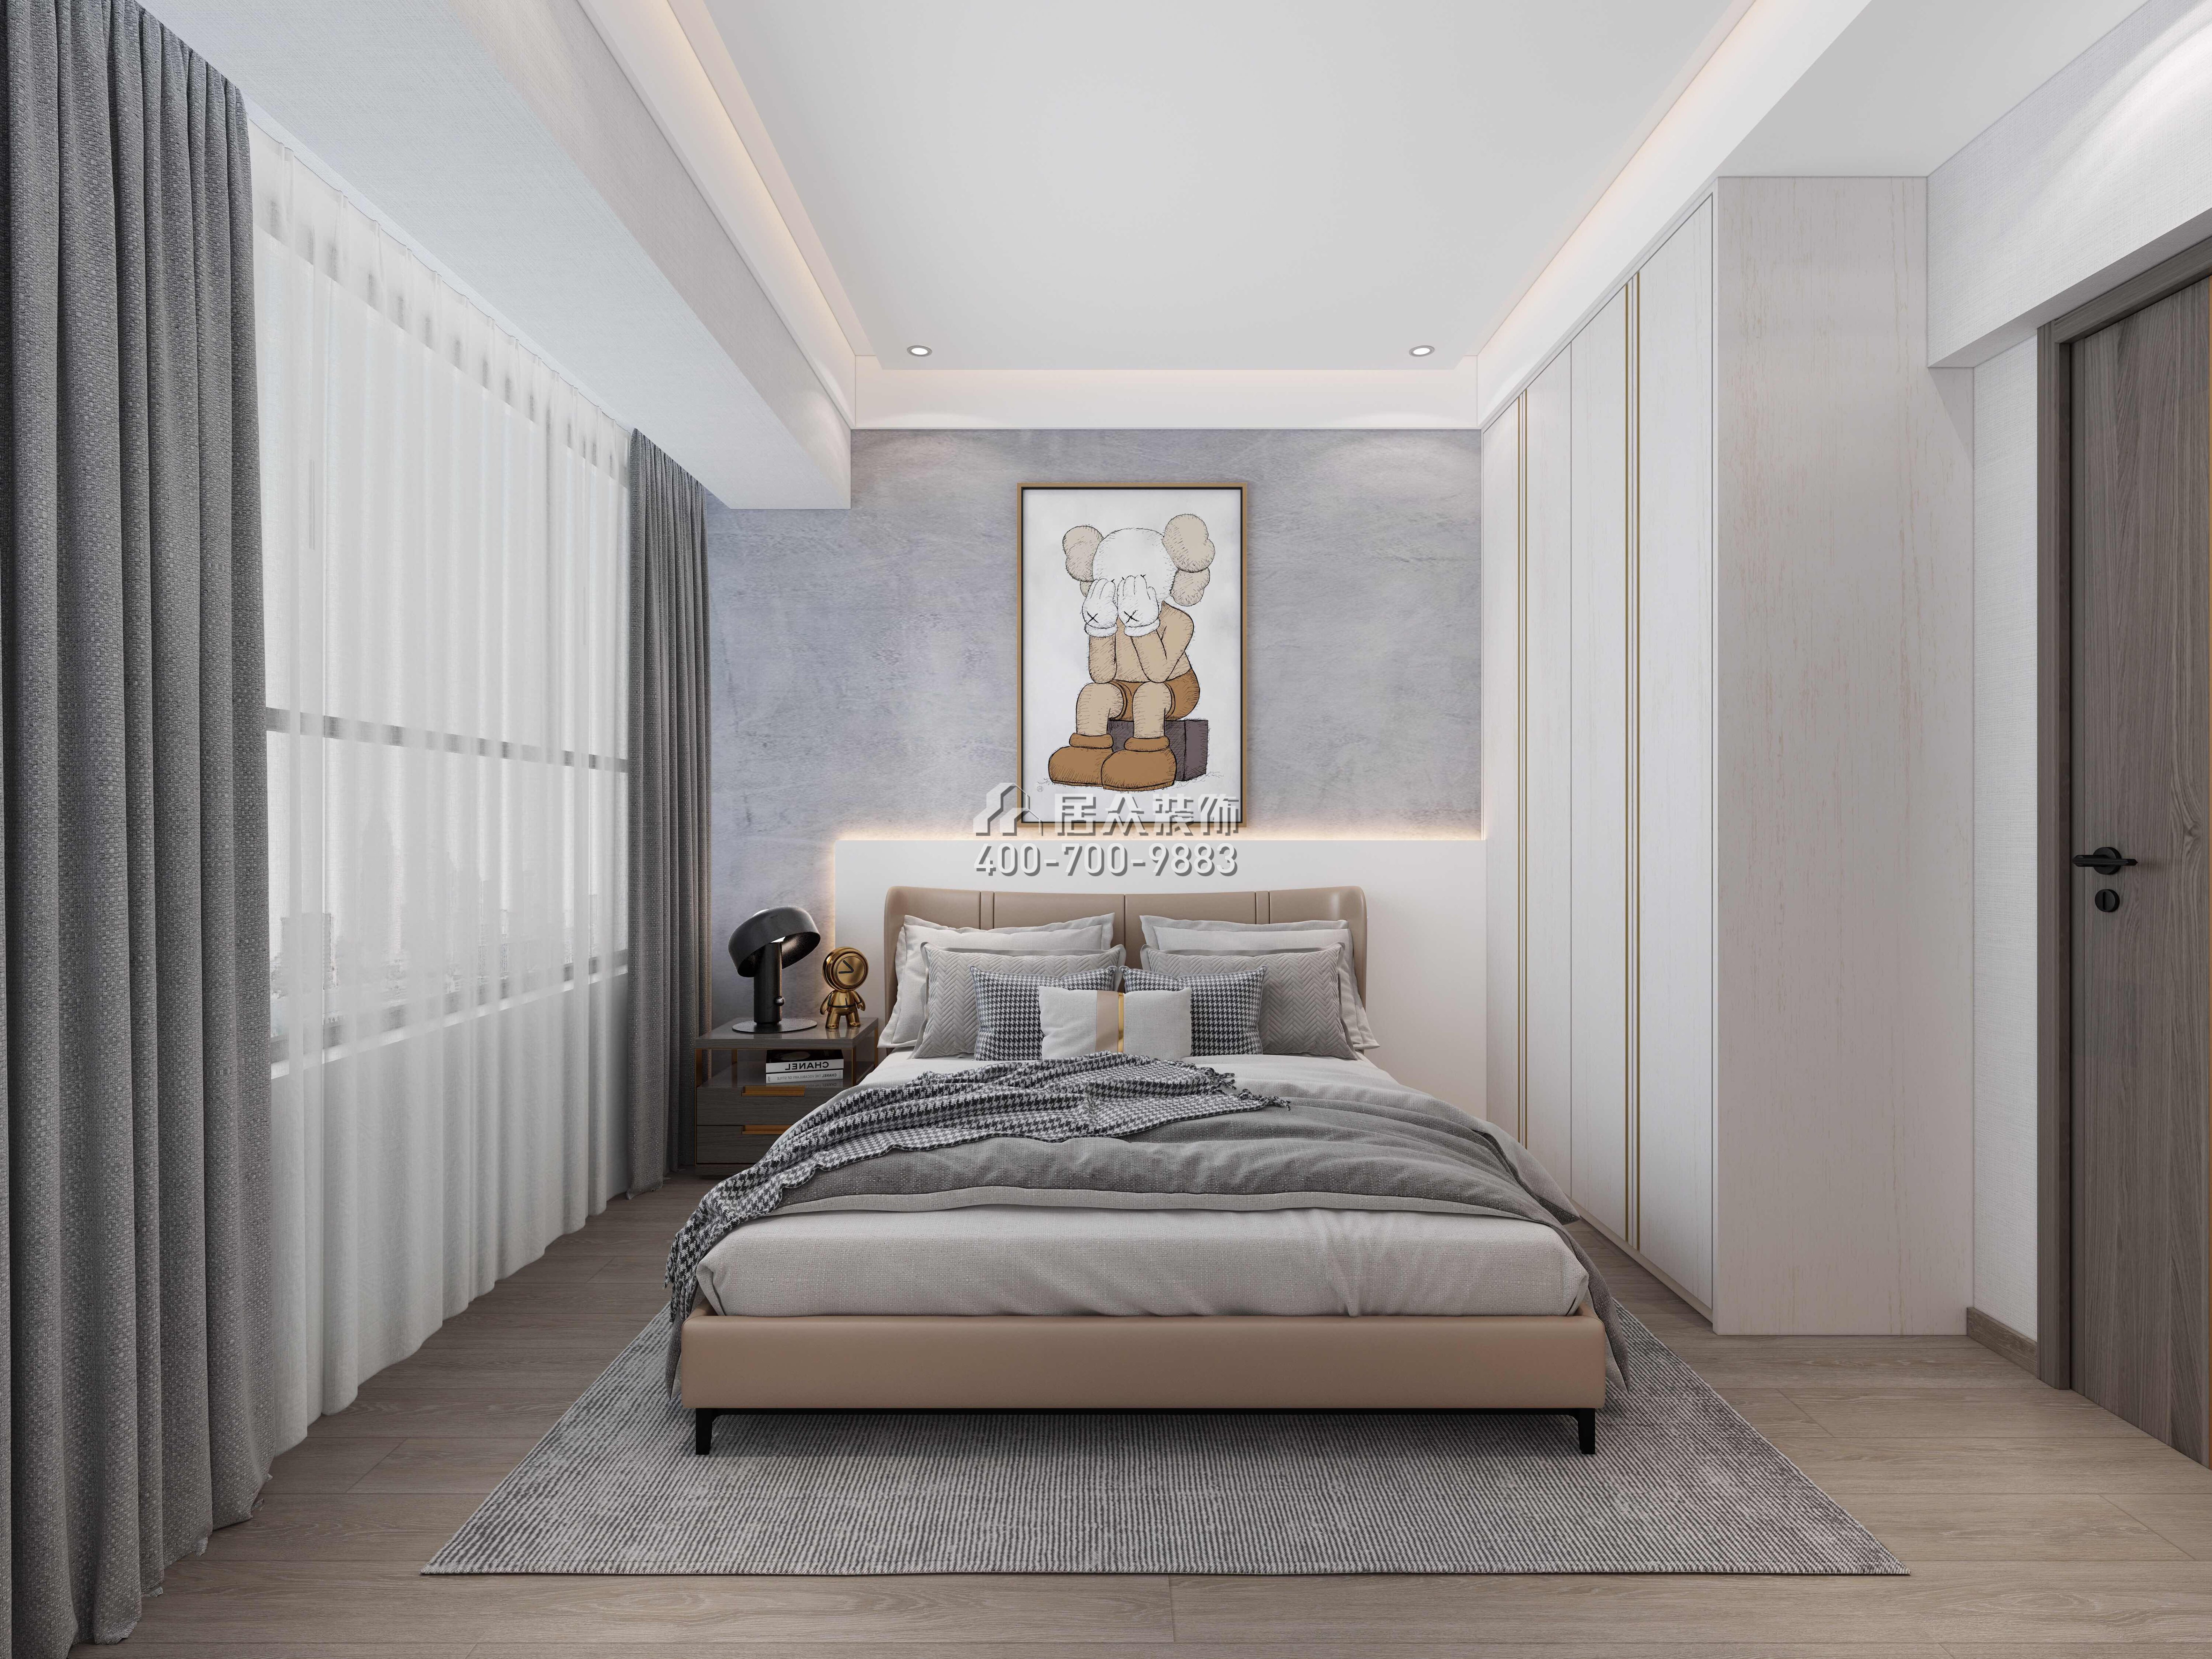 東關樂尚林居110平方米現代簡約風格平層戶型臥室裝修效果圖